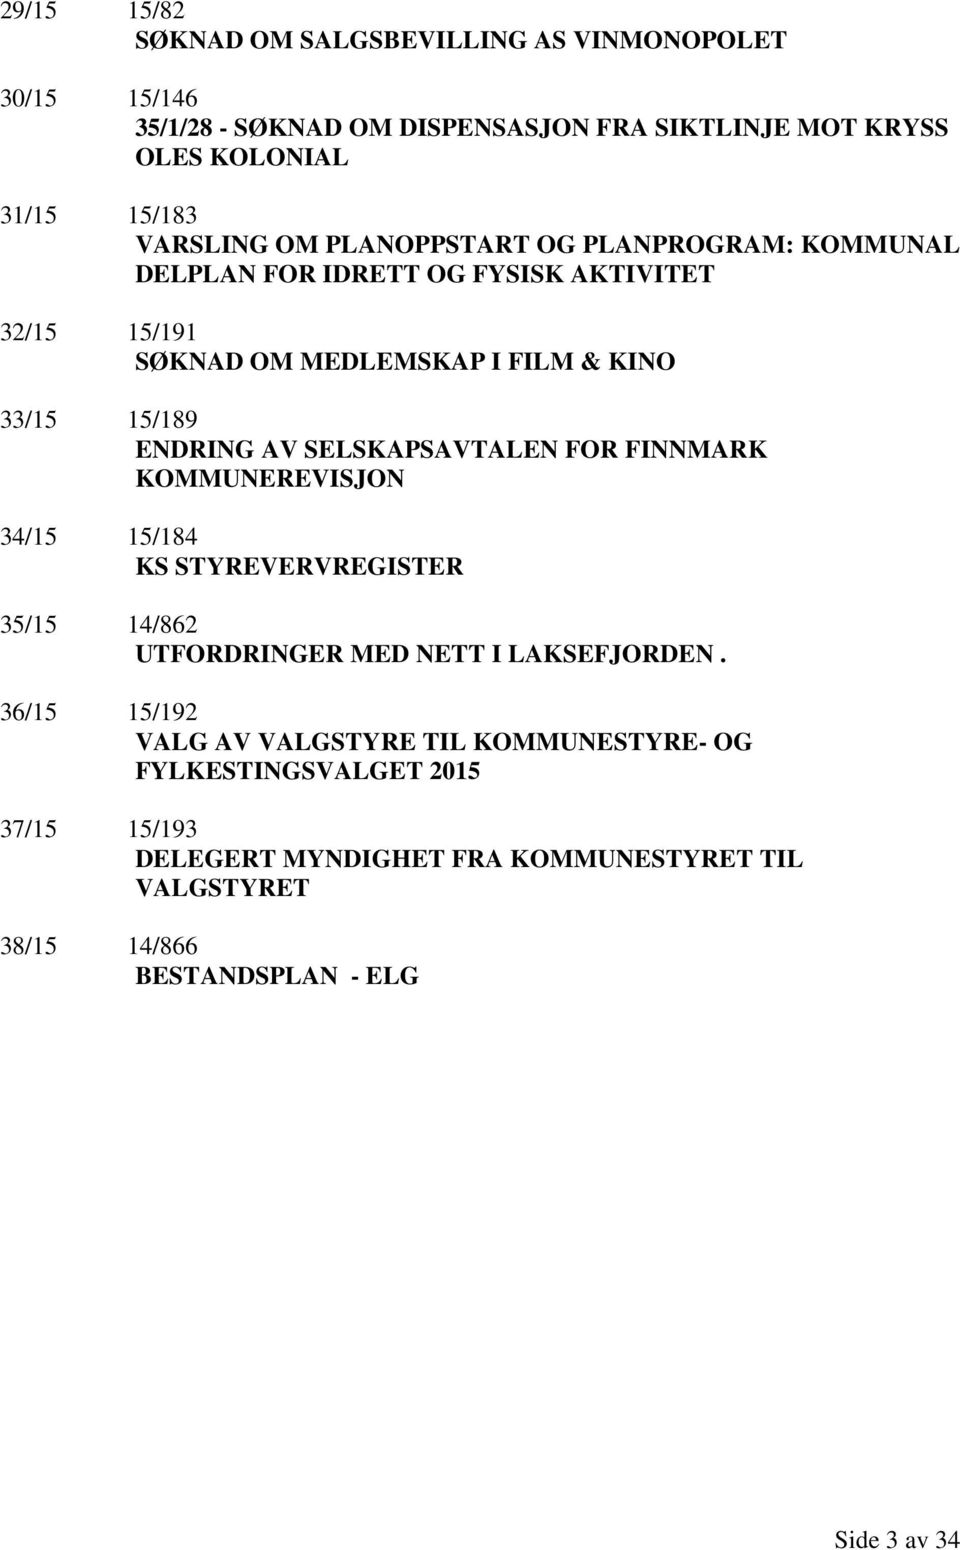 ENDRING AV SELSKAPSAVTALEN FOR FINNMARK KOMMUNEREVISJON 34/15 15/184 KS STYREVERVREGISTER 35/15 14/862 UTFORDRINGER MED NETT I LAKSEFJORDEN.